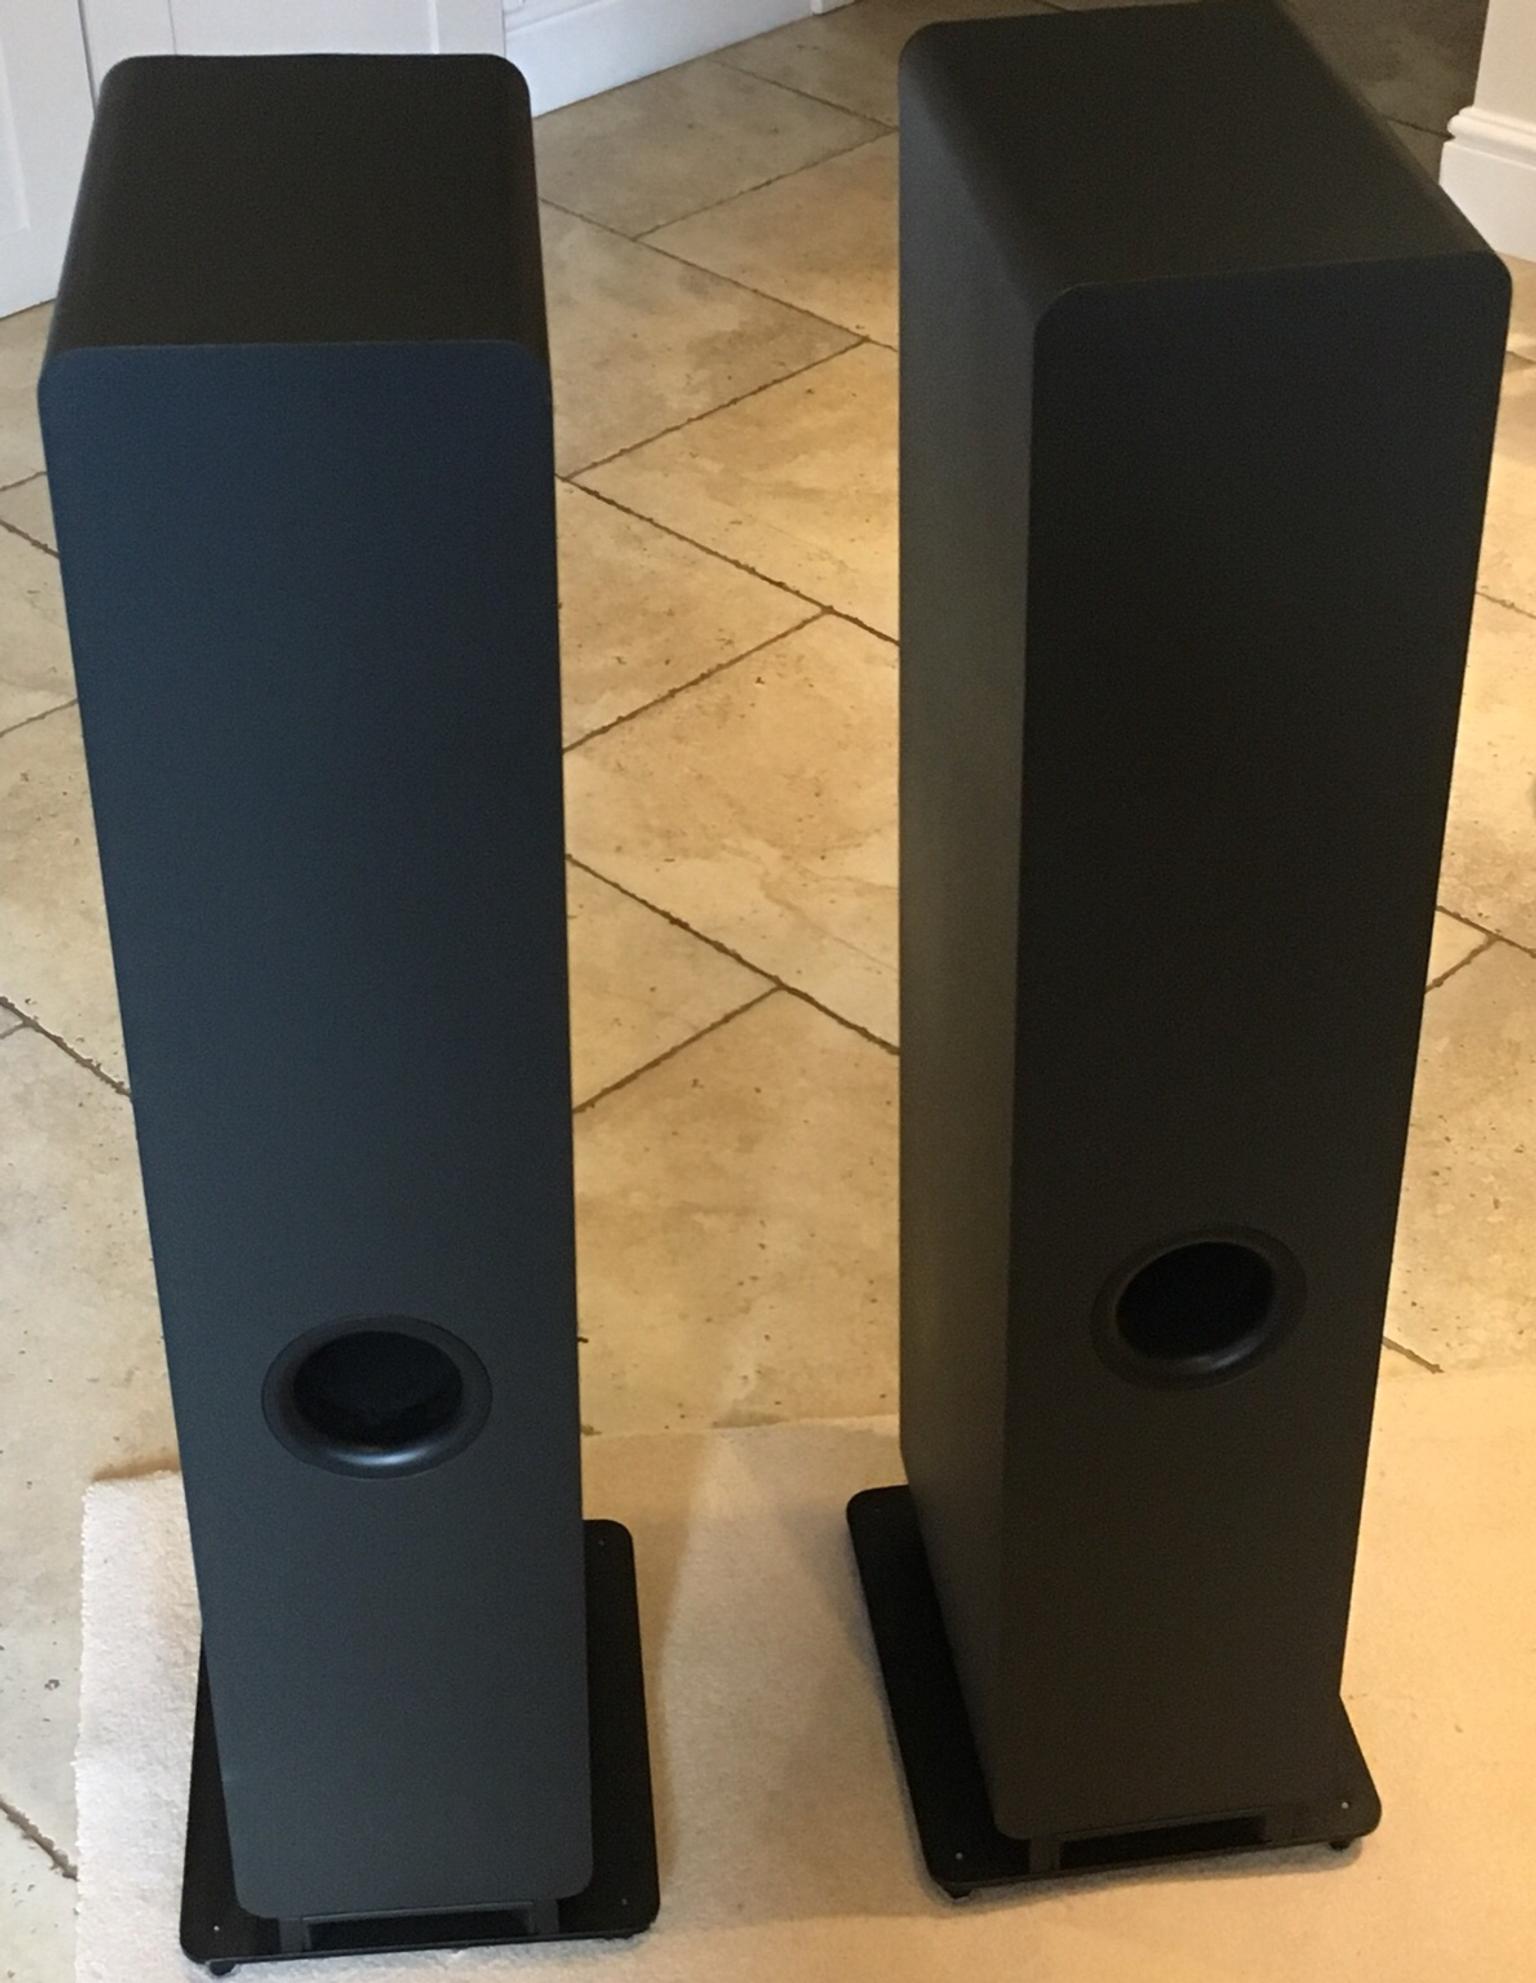 Pair Of Speakers Q Acoustic Q2050i Graphite In Bray Fur 155 00